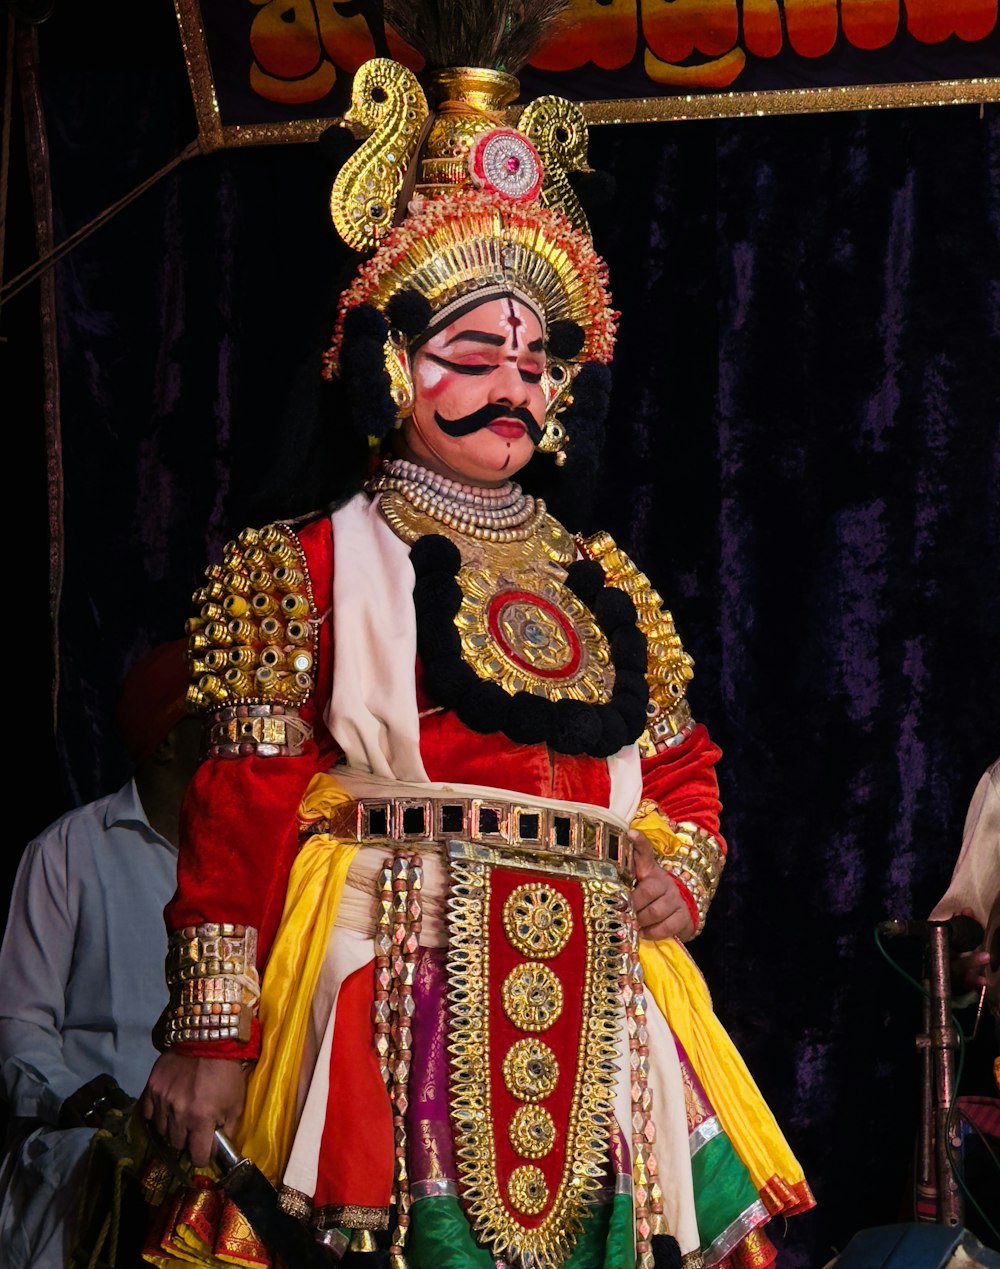 Ein Mann in einem bunten Kostüm steht vor einer Bühne